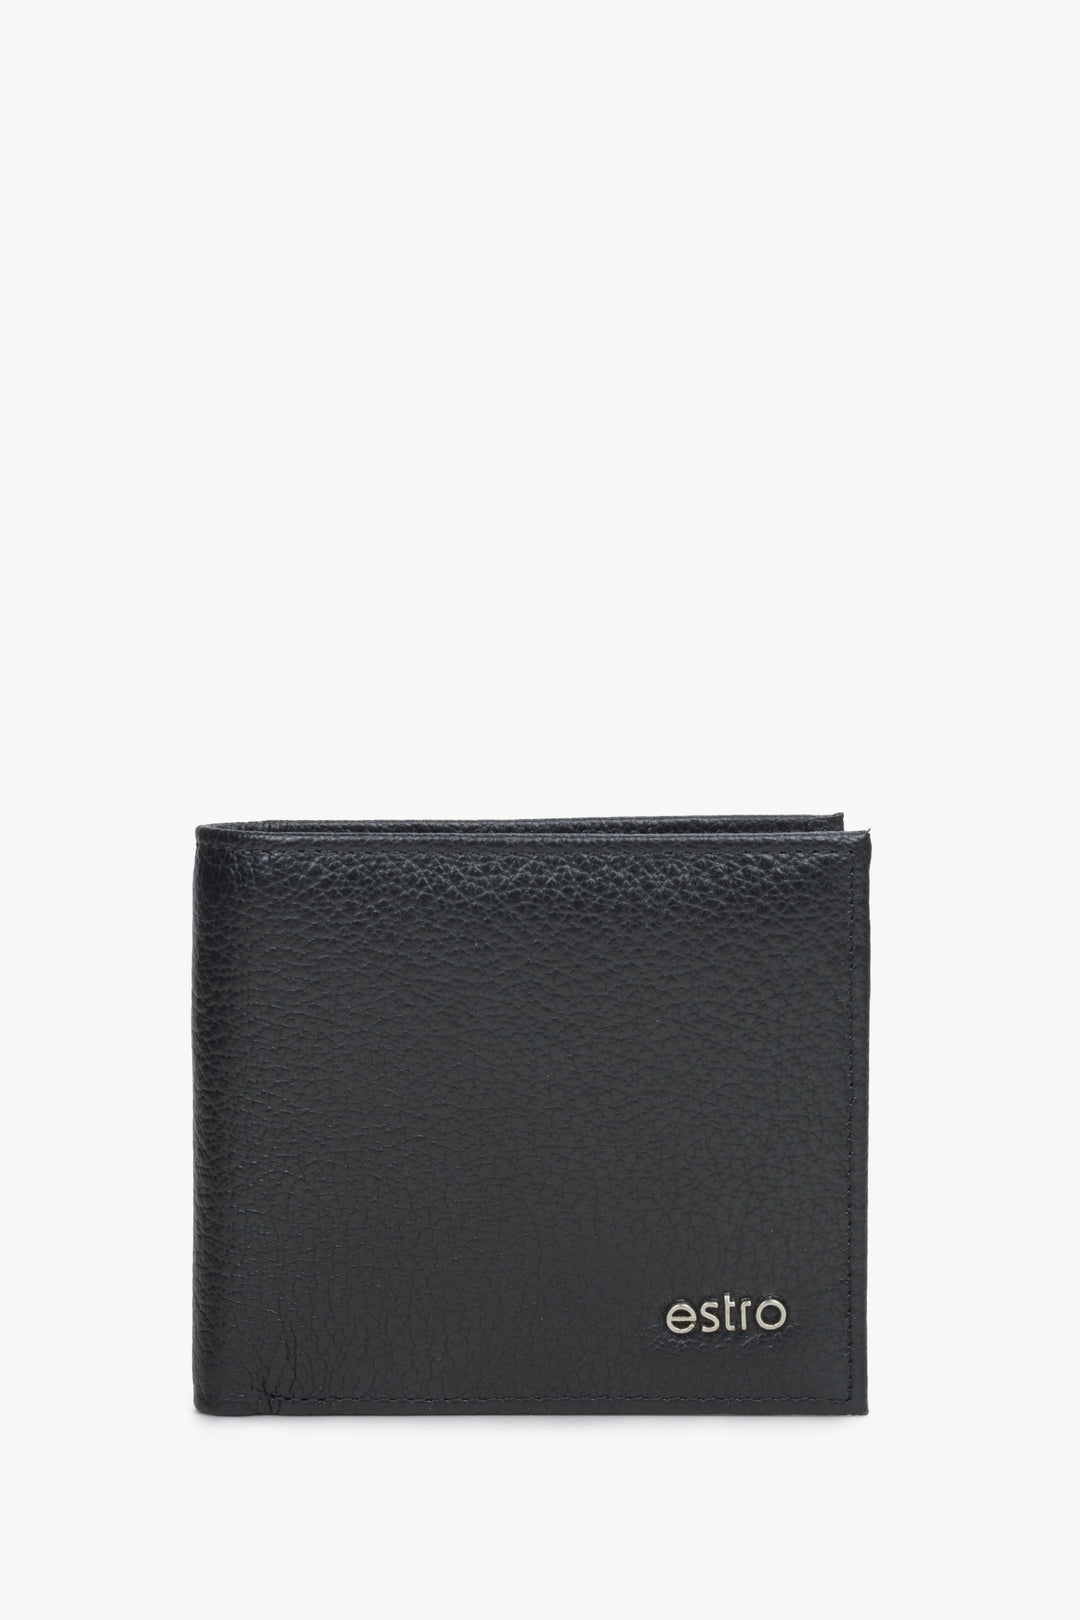 Kompaktowy portfel męski ze skóry naturalnej w kolorze czarnym Estro ER00114456